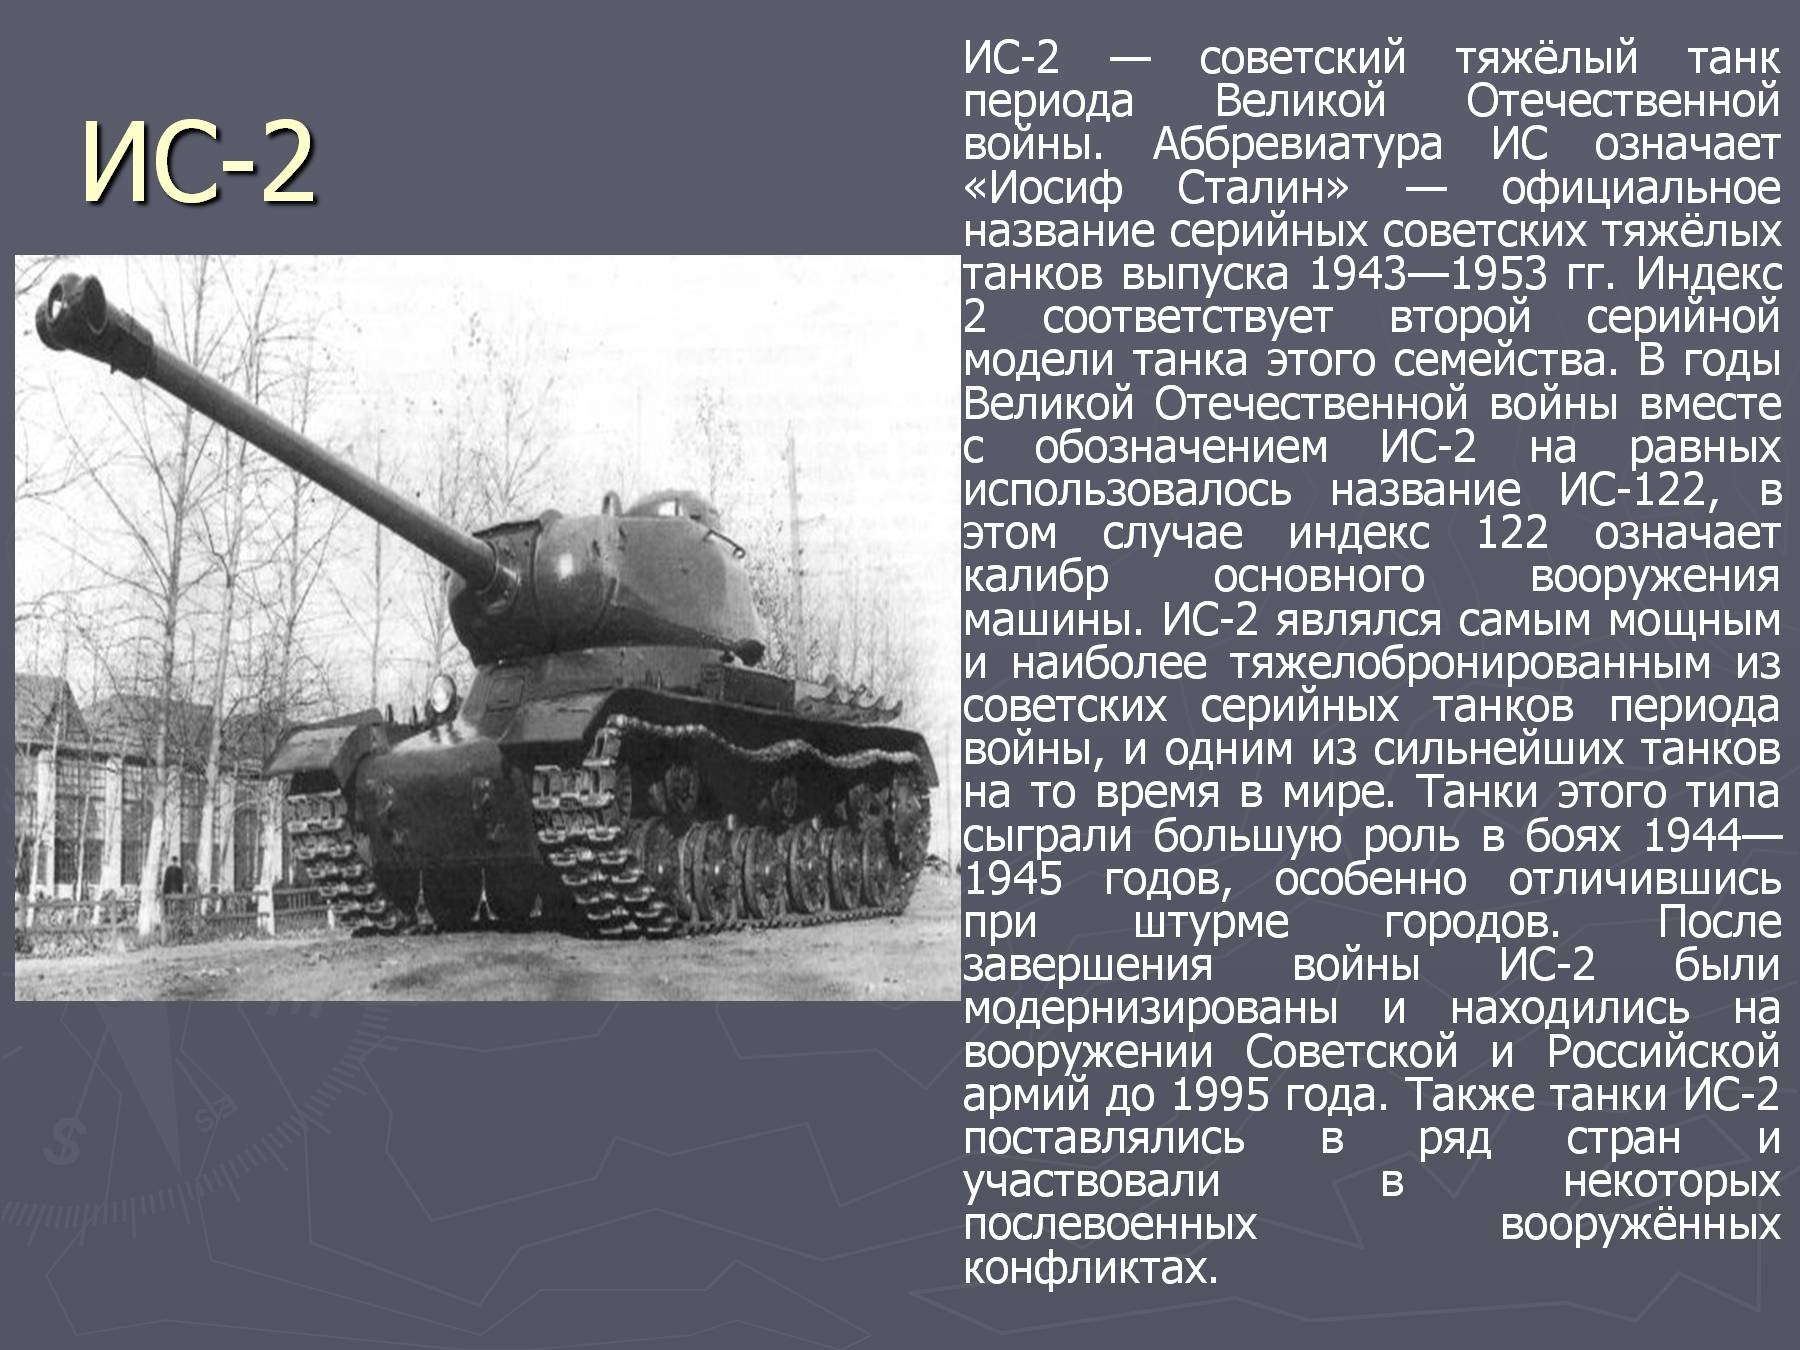 ИС-2 — Советский тяжелый танк периода второй мировой войны.